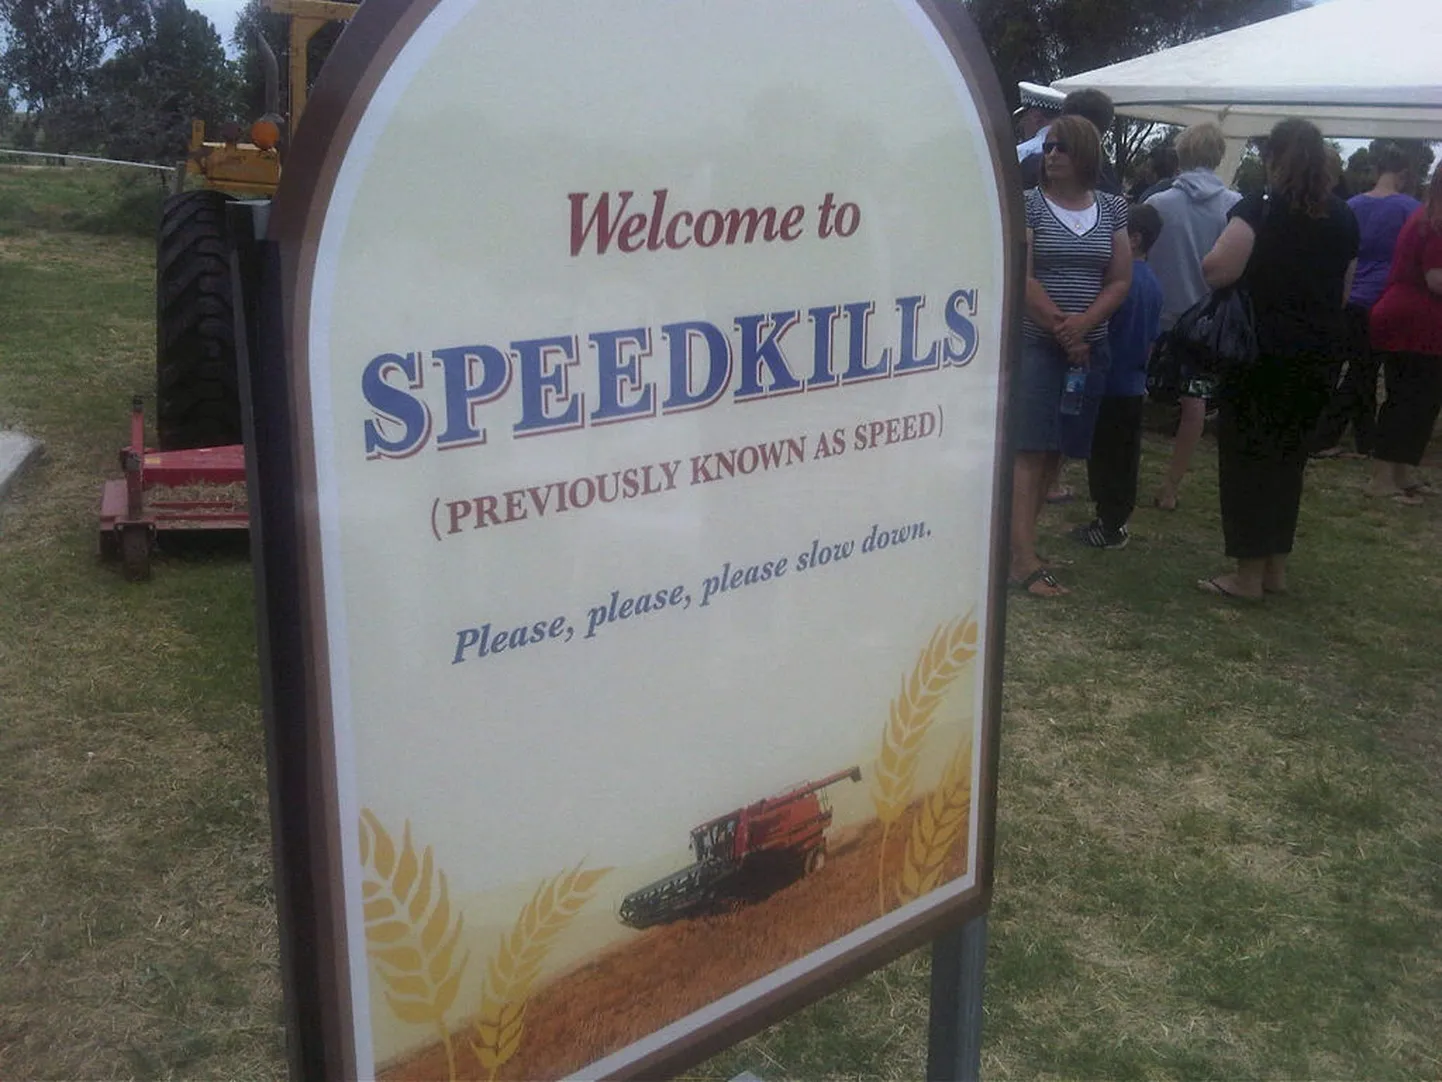 Tere tulemast Speedkillsi! (Varem tuntud kui Speed)